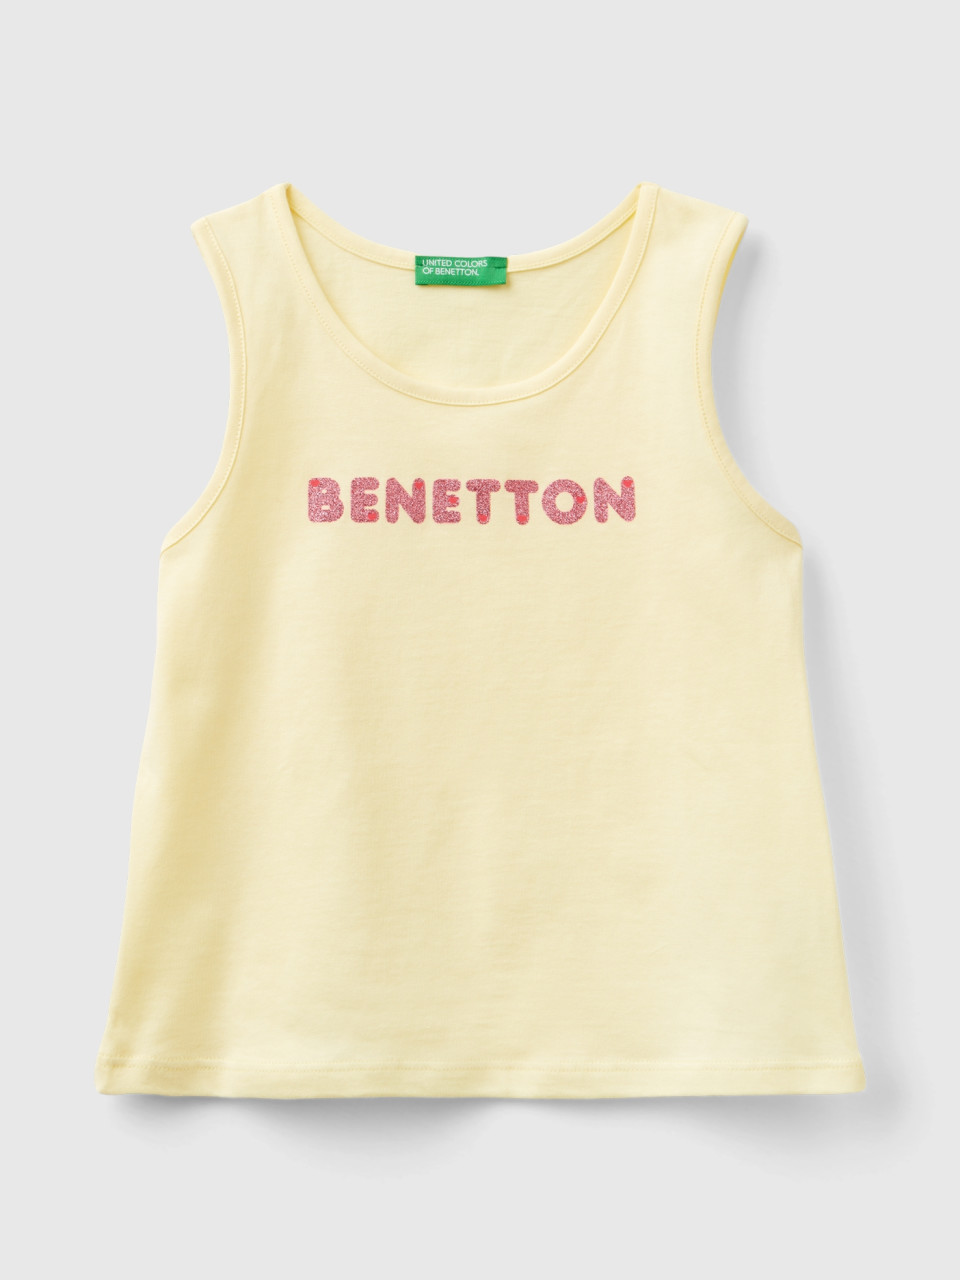 Benetton, Trägertop Mit Logo, größe 90, Vanille